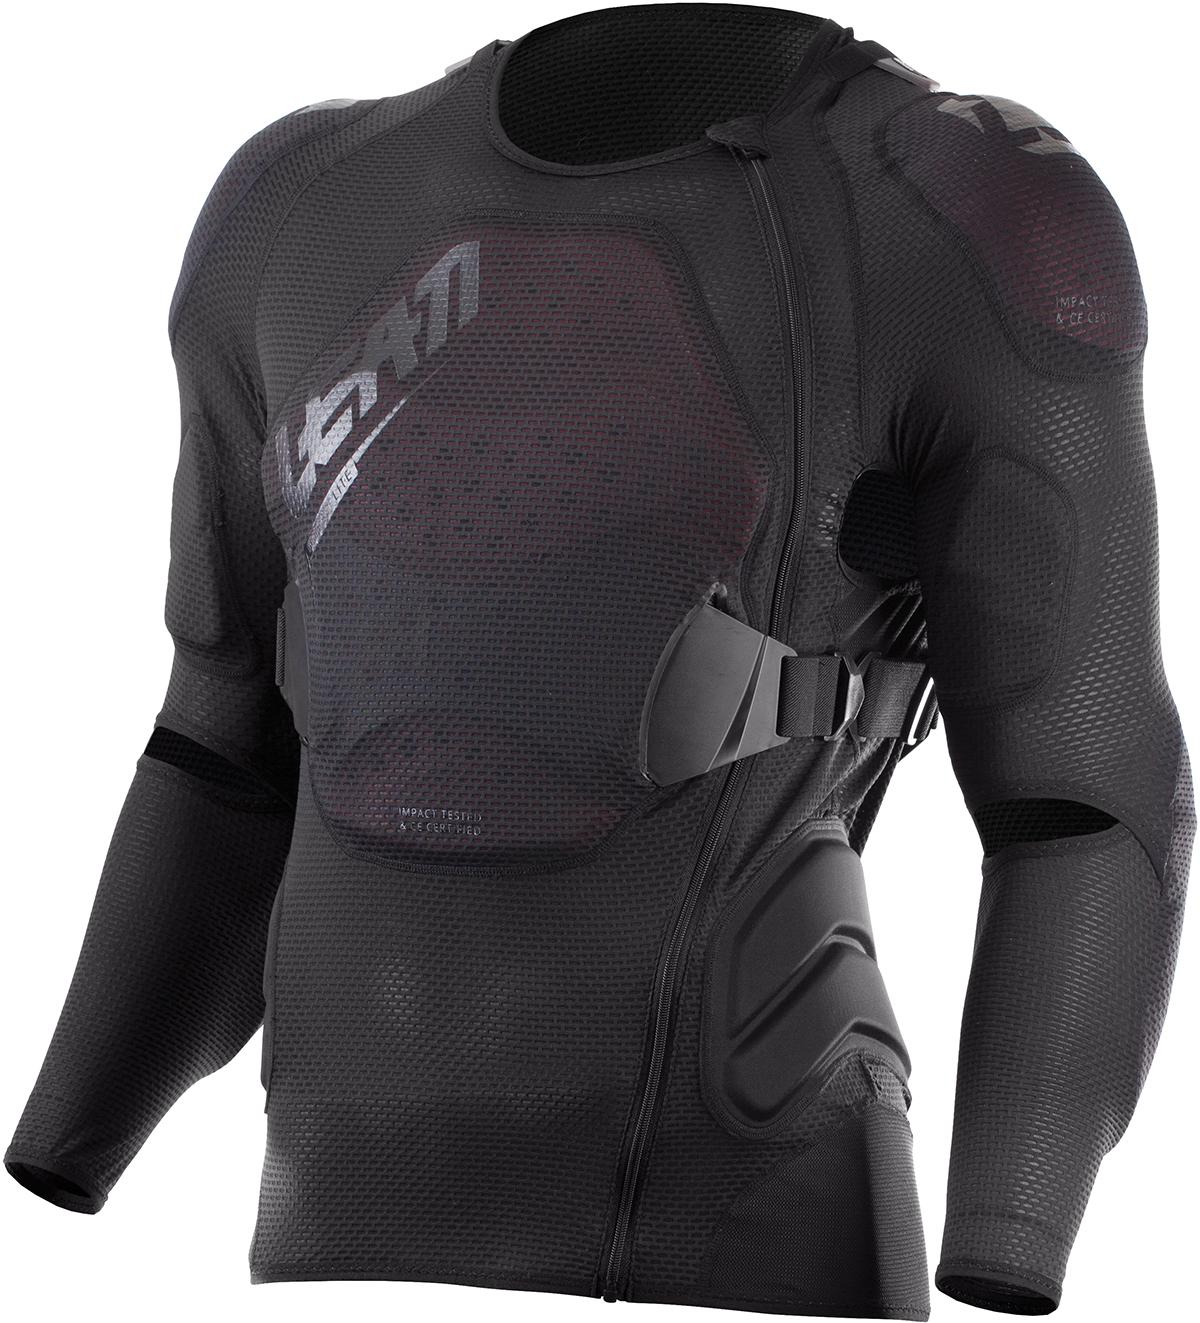 Leatt Body Protector 3df Airfit Lite  Black